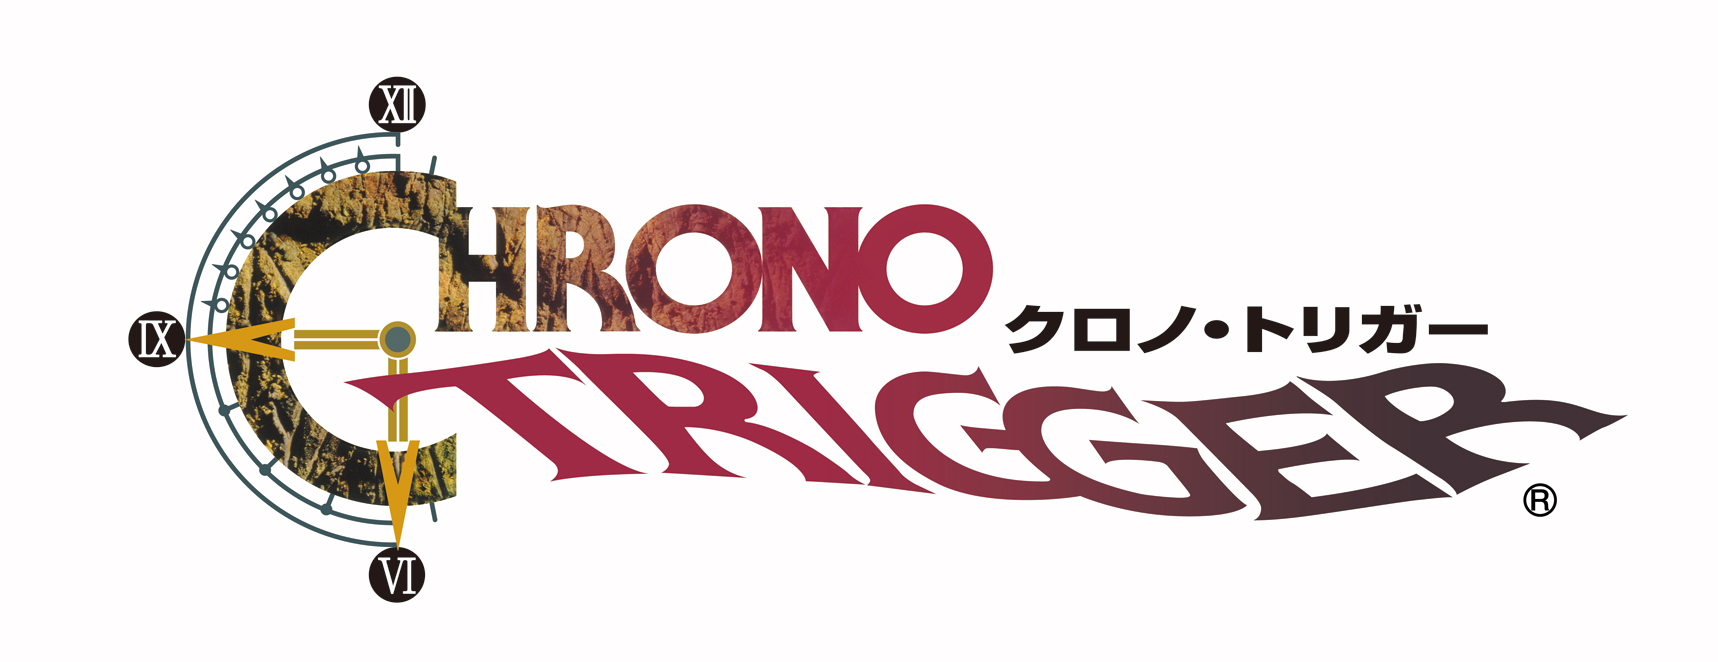 chrono-trigger_logo.jpg